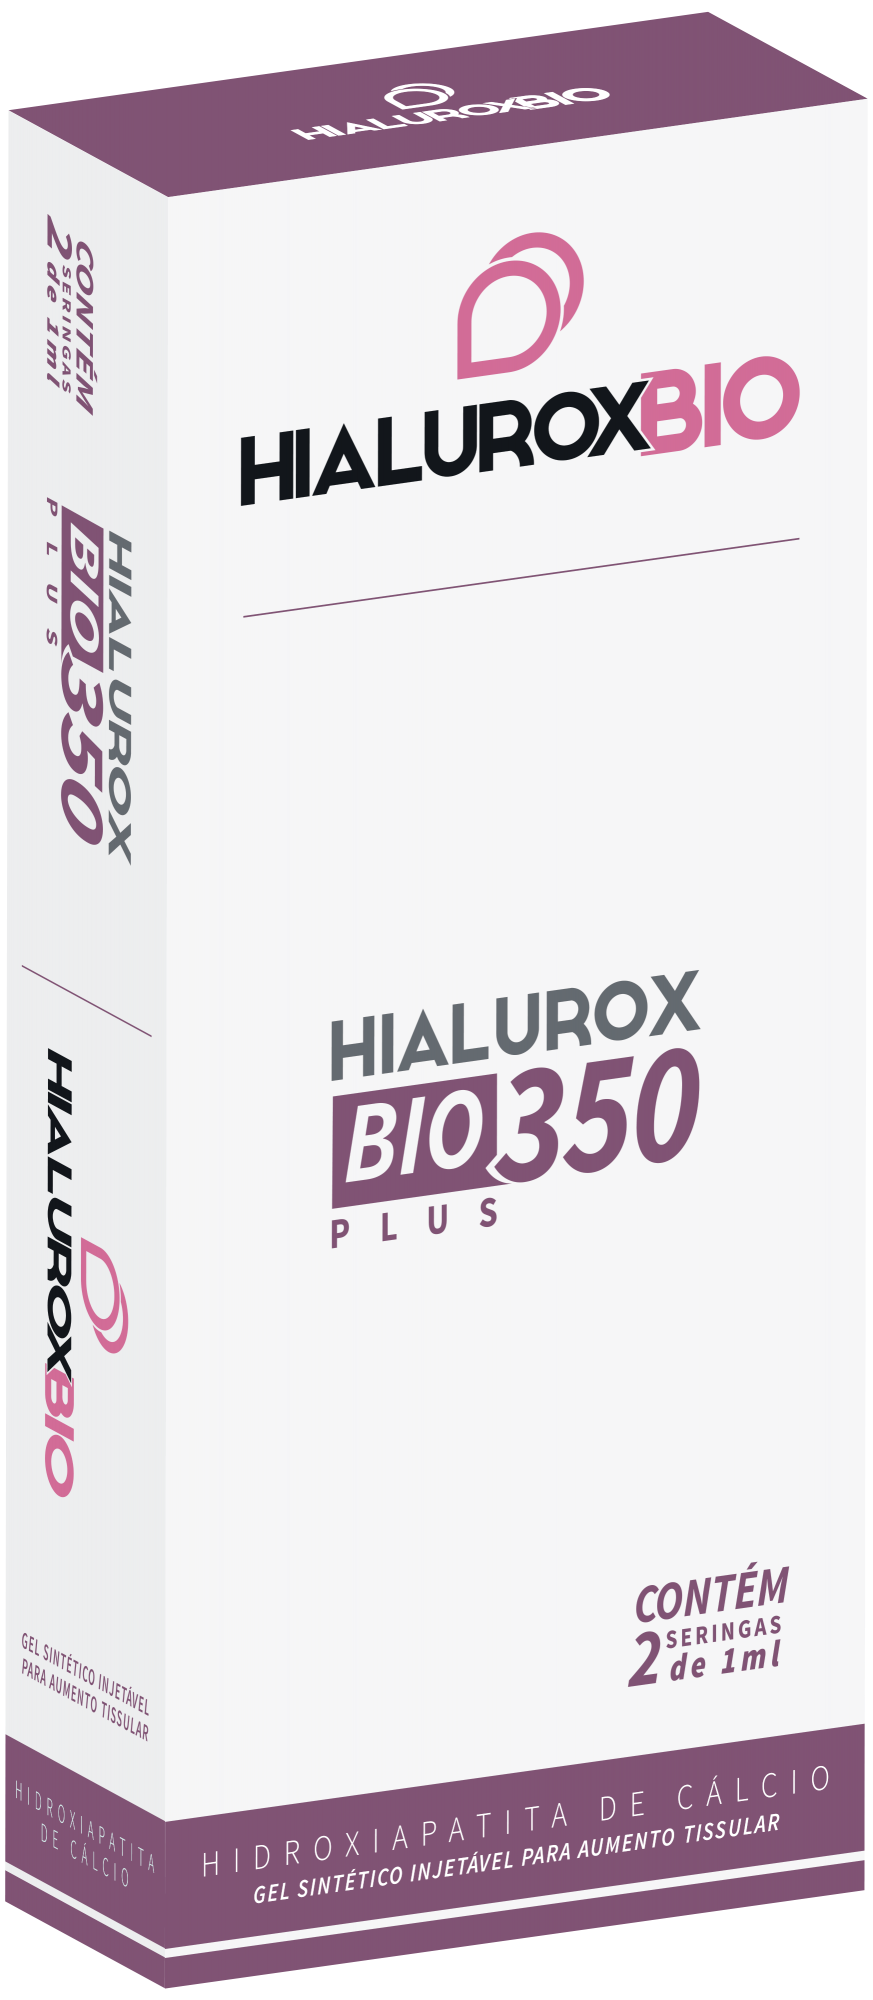 Bioestimulador HialuroxBio Plus 2 ML 350 MG